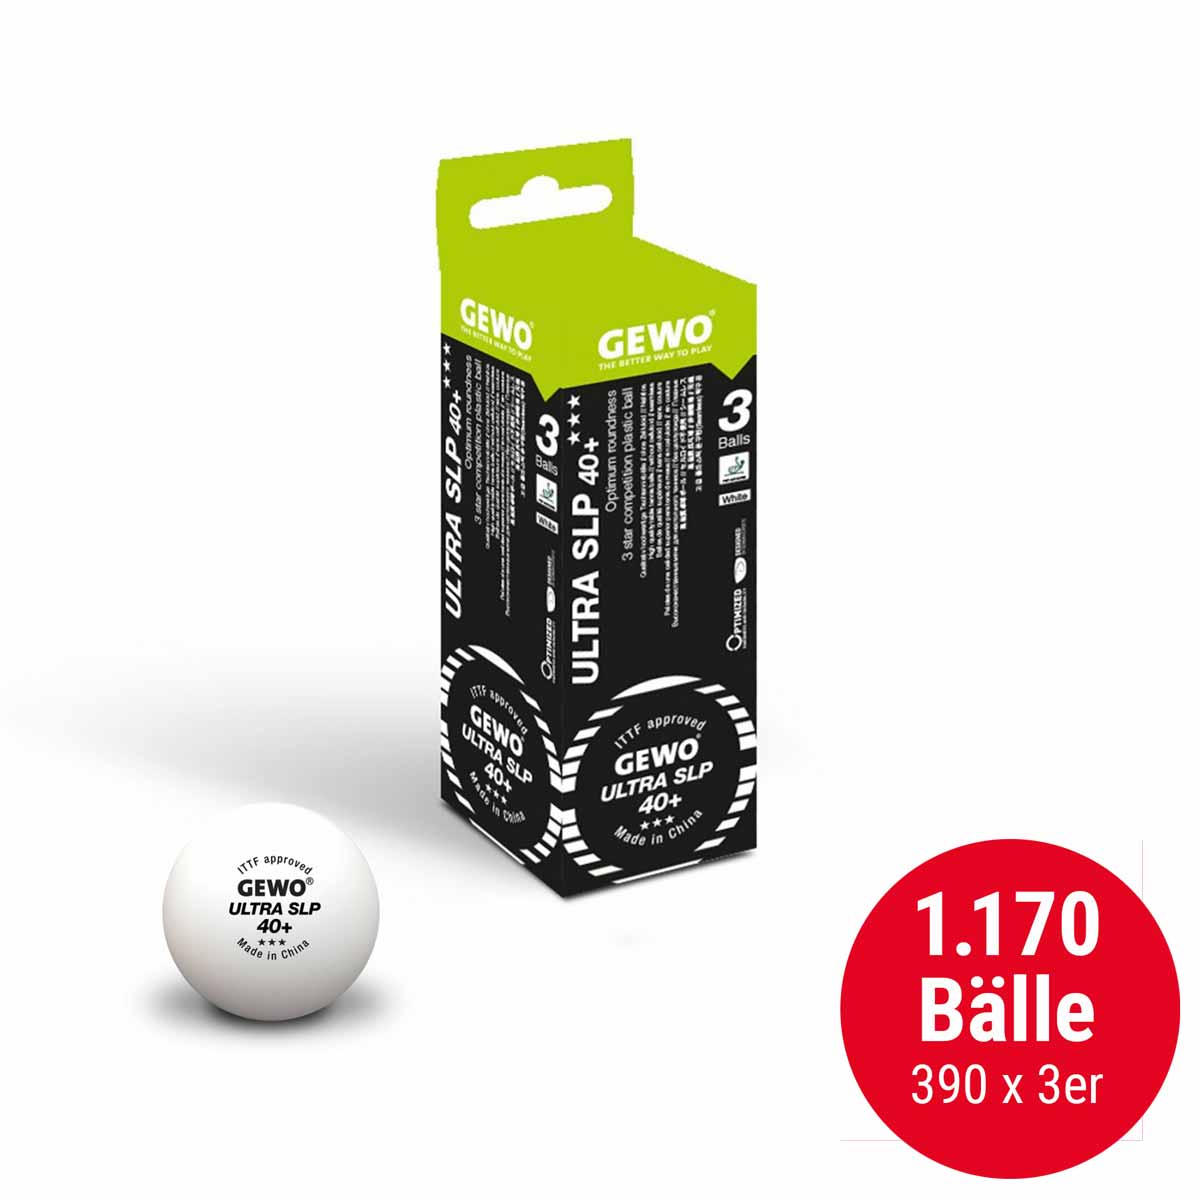 GEWO Ball Ultra SLP 40+ *** 390 x 3er weiß